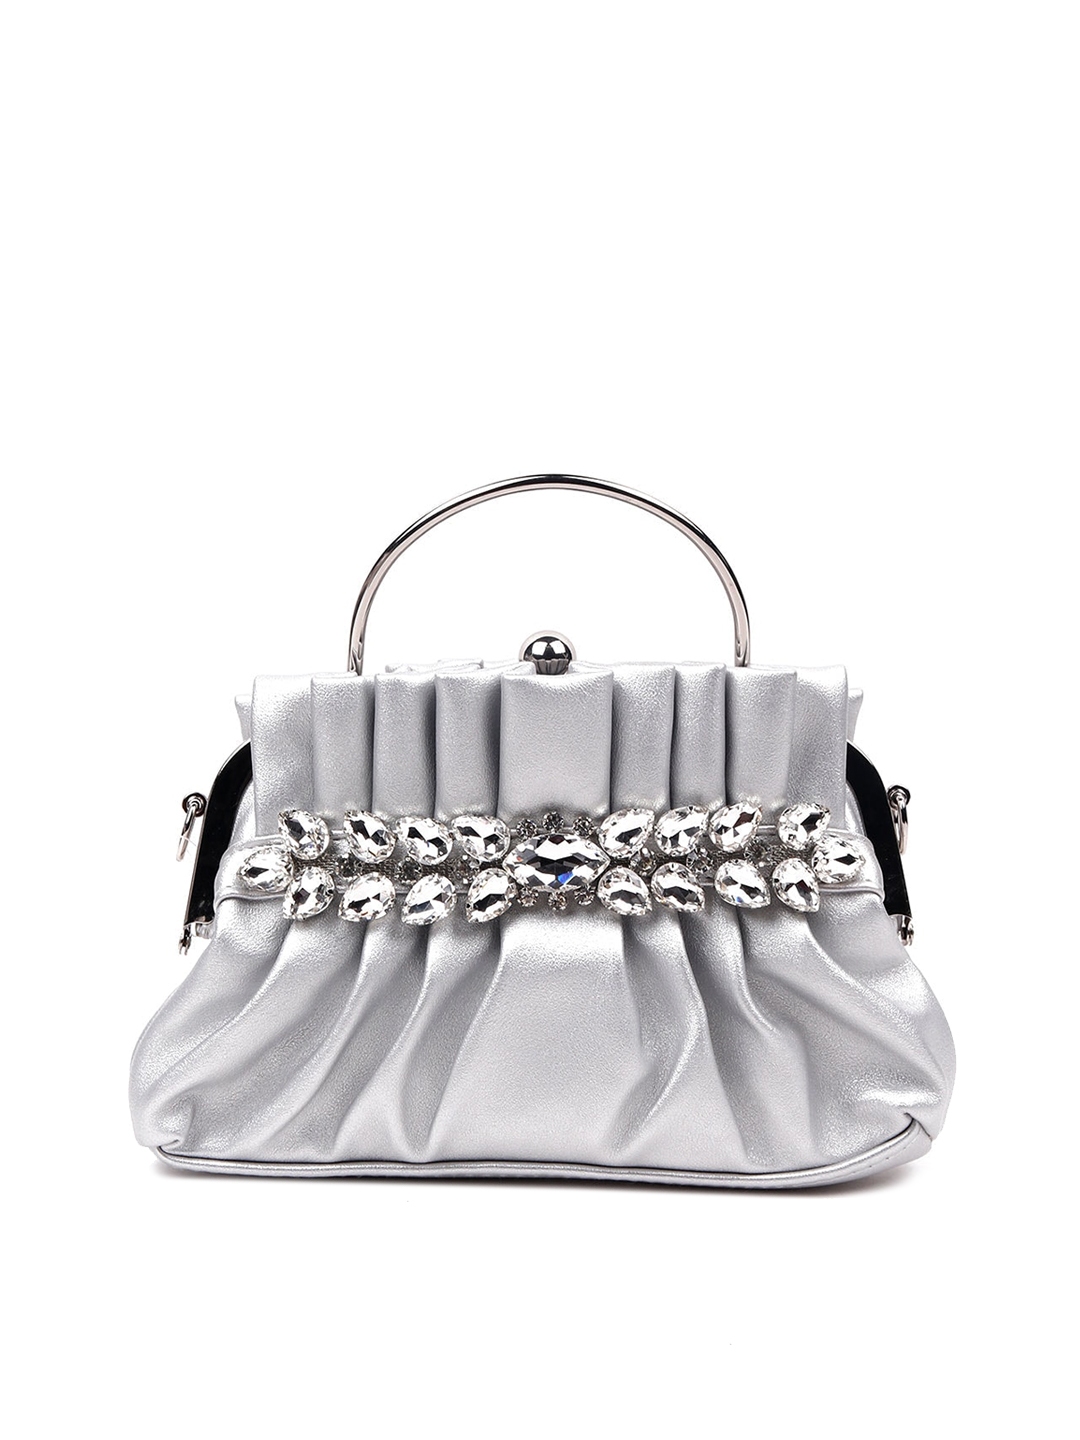 Buy ODETTE Silver Toned Embellished Structured Handheld Bag - Handbags ...